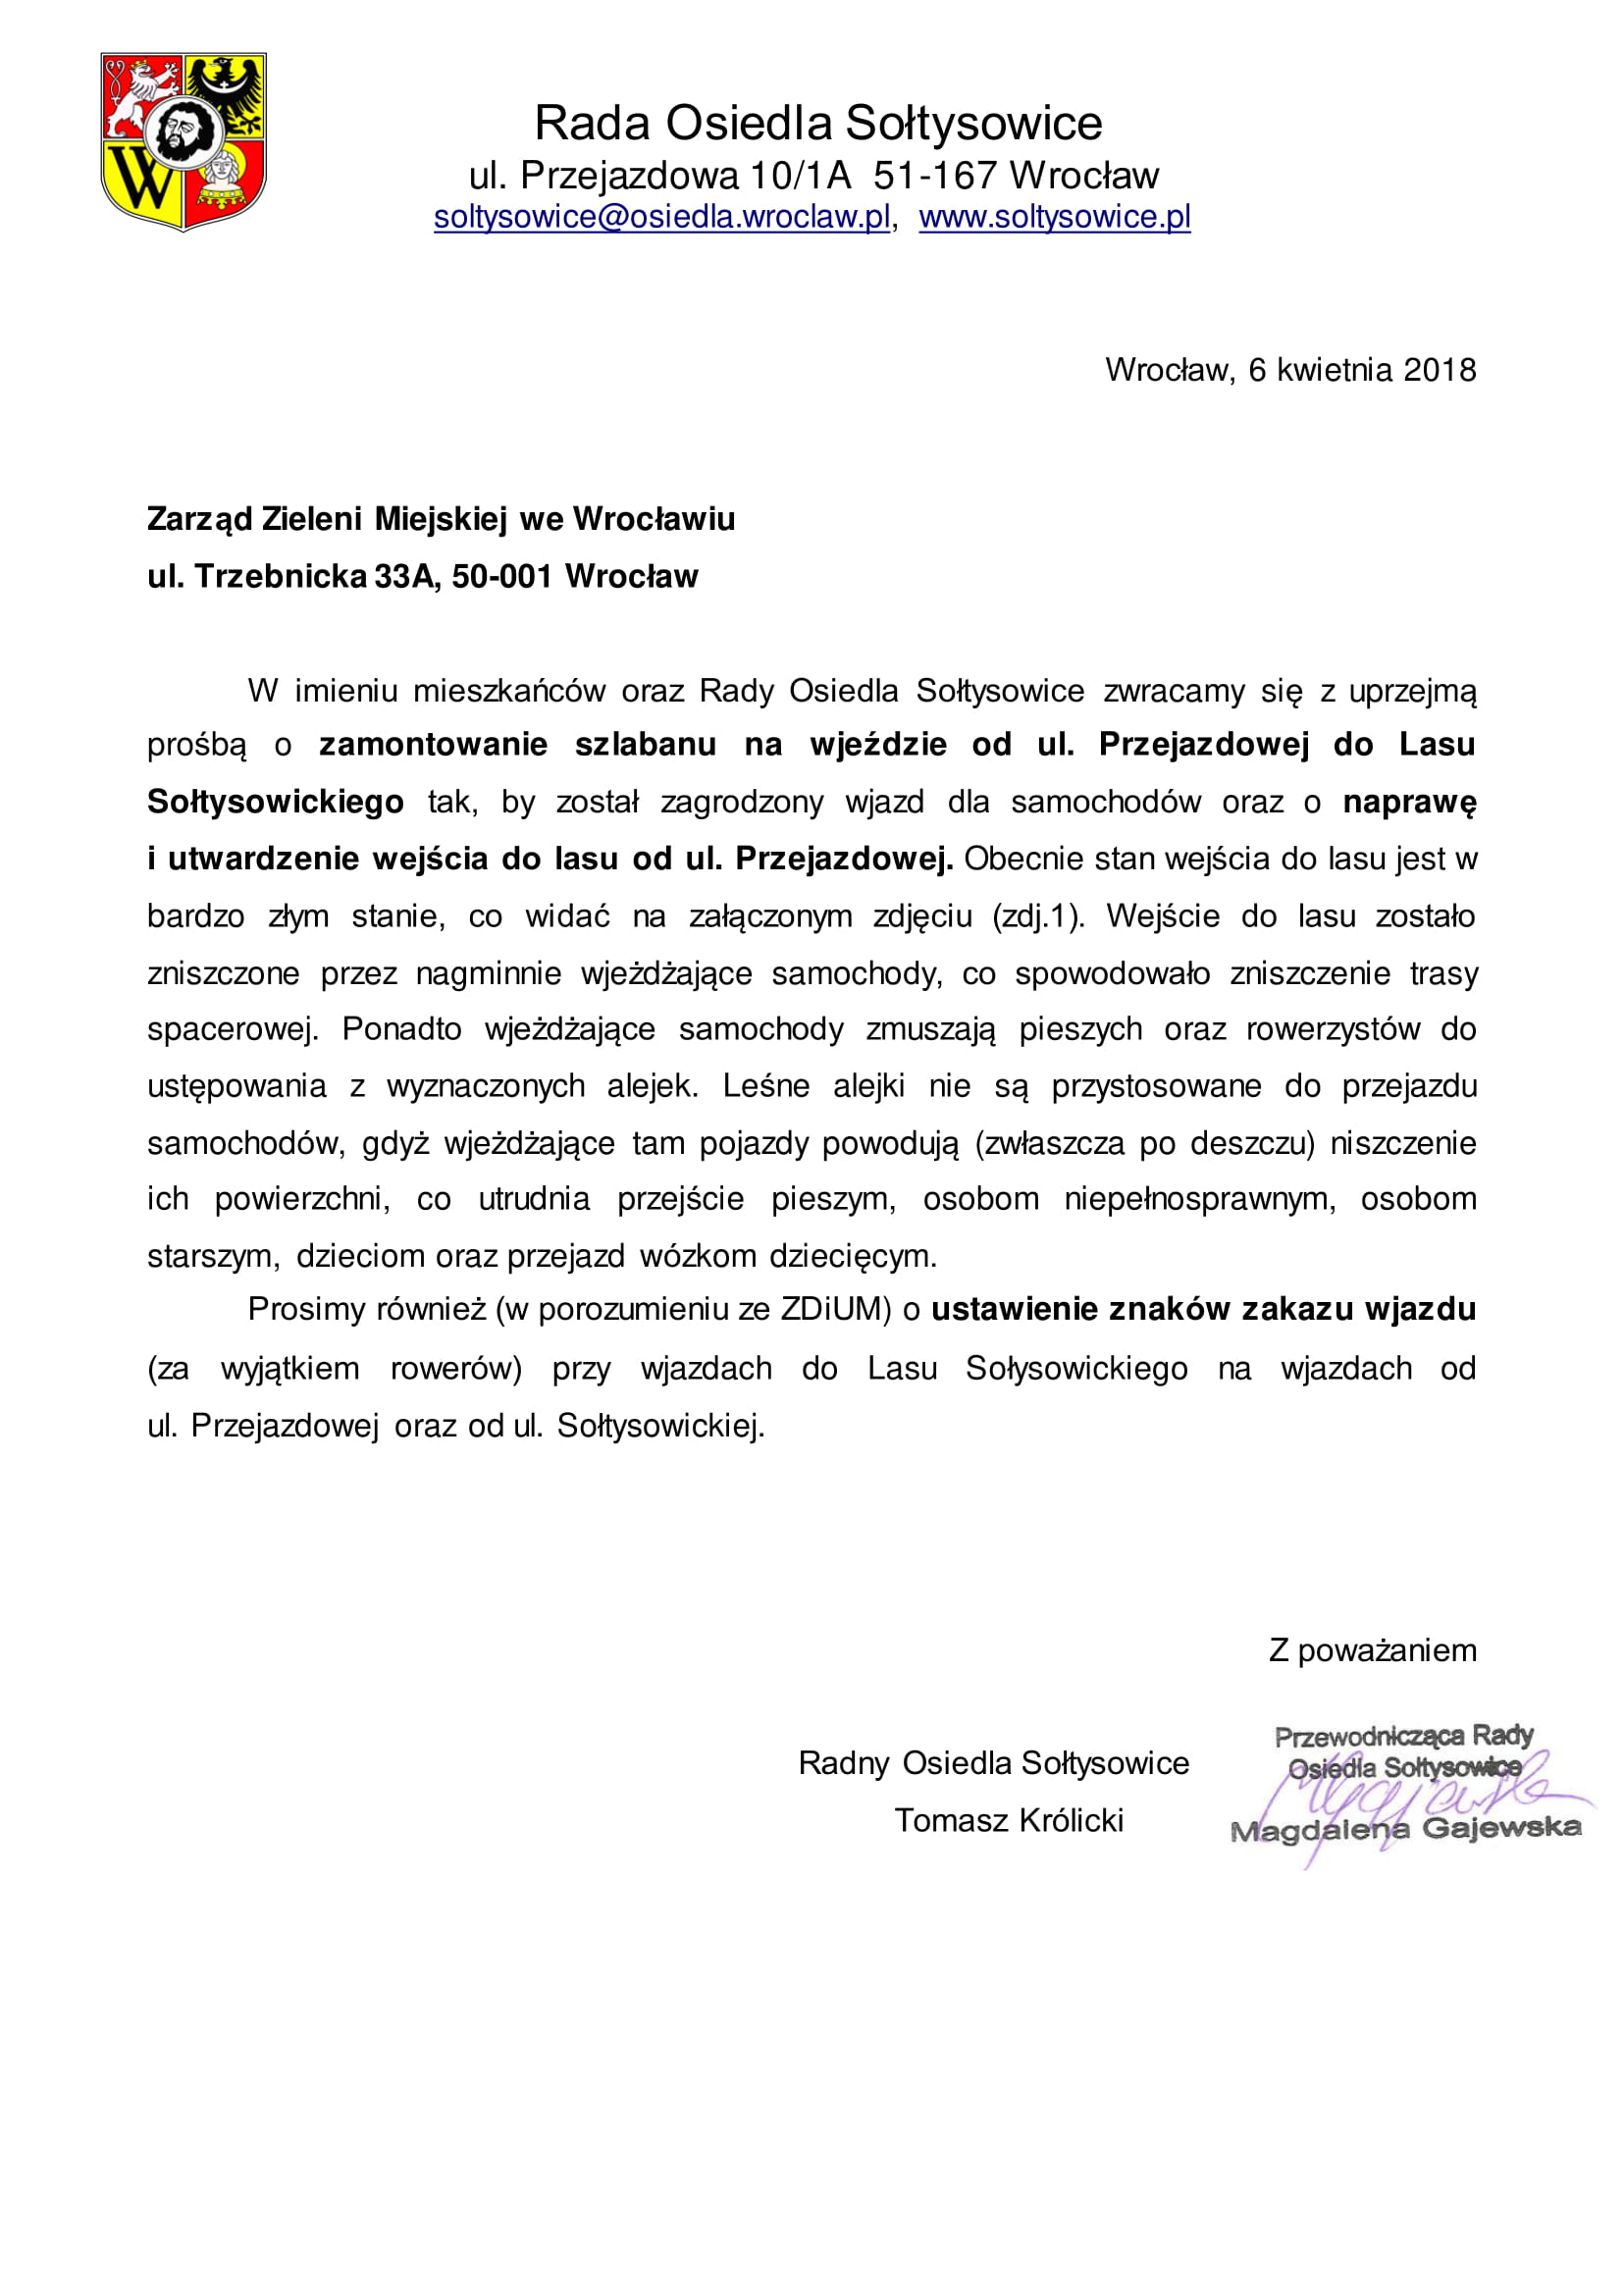 pismo zarząd zieleni miejskiej sołtysowice 1